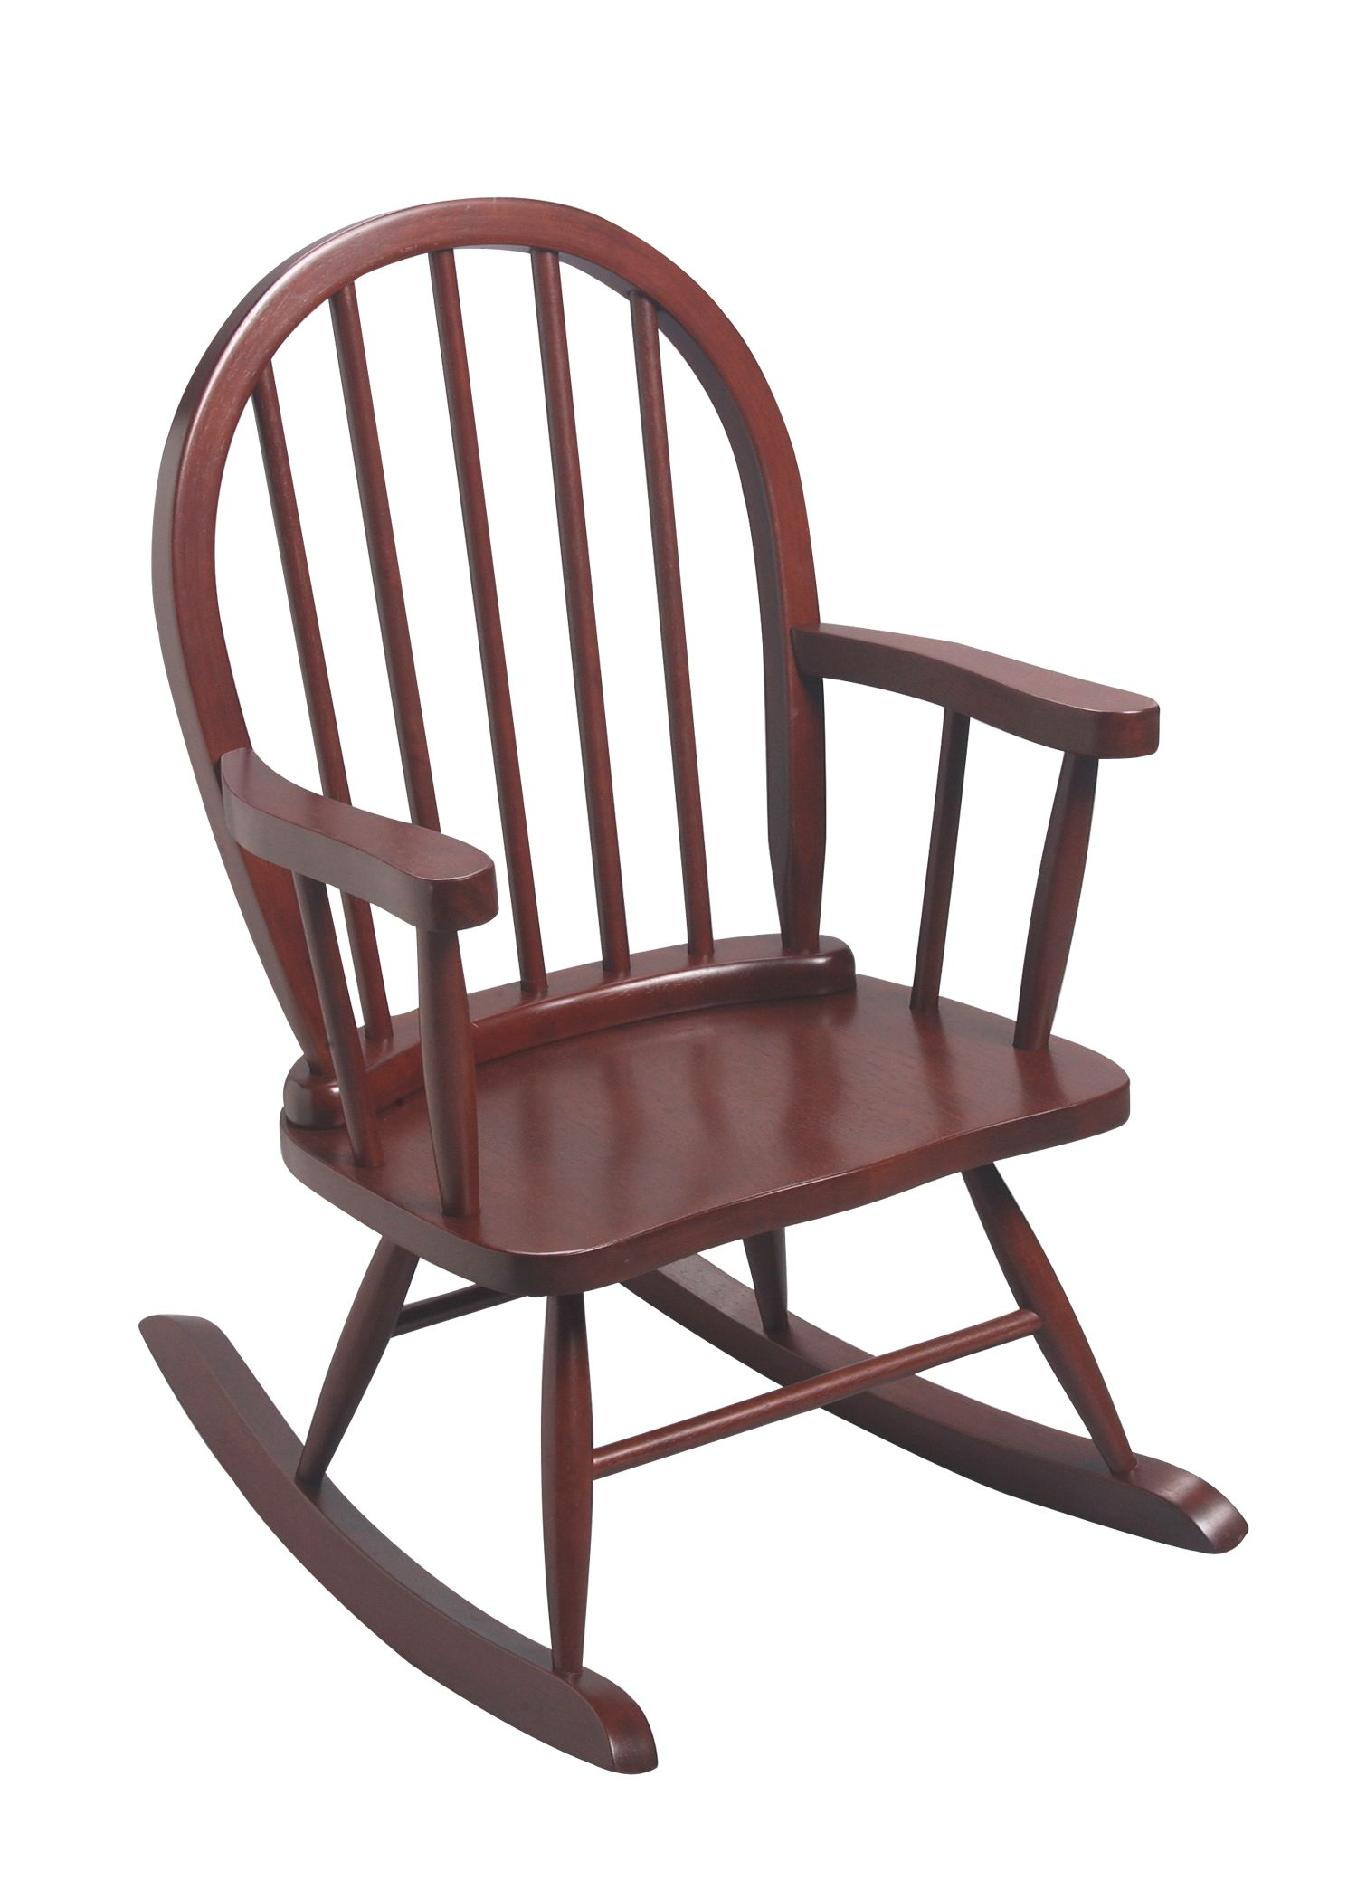 3600C Windsor Children's Rocking Chair - Cherry